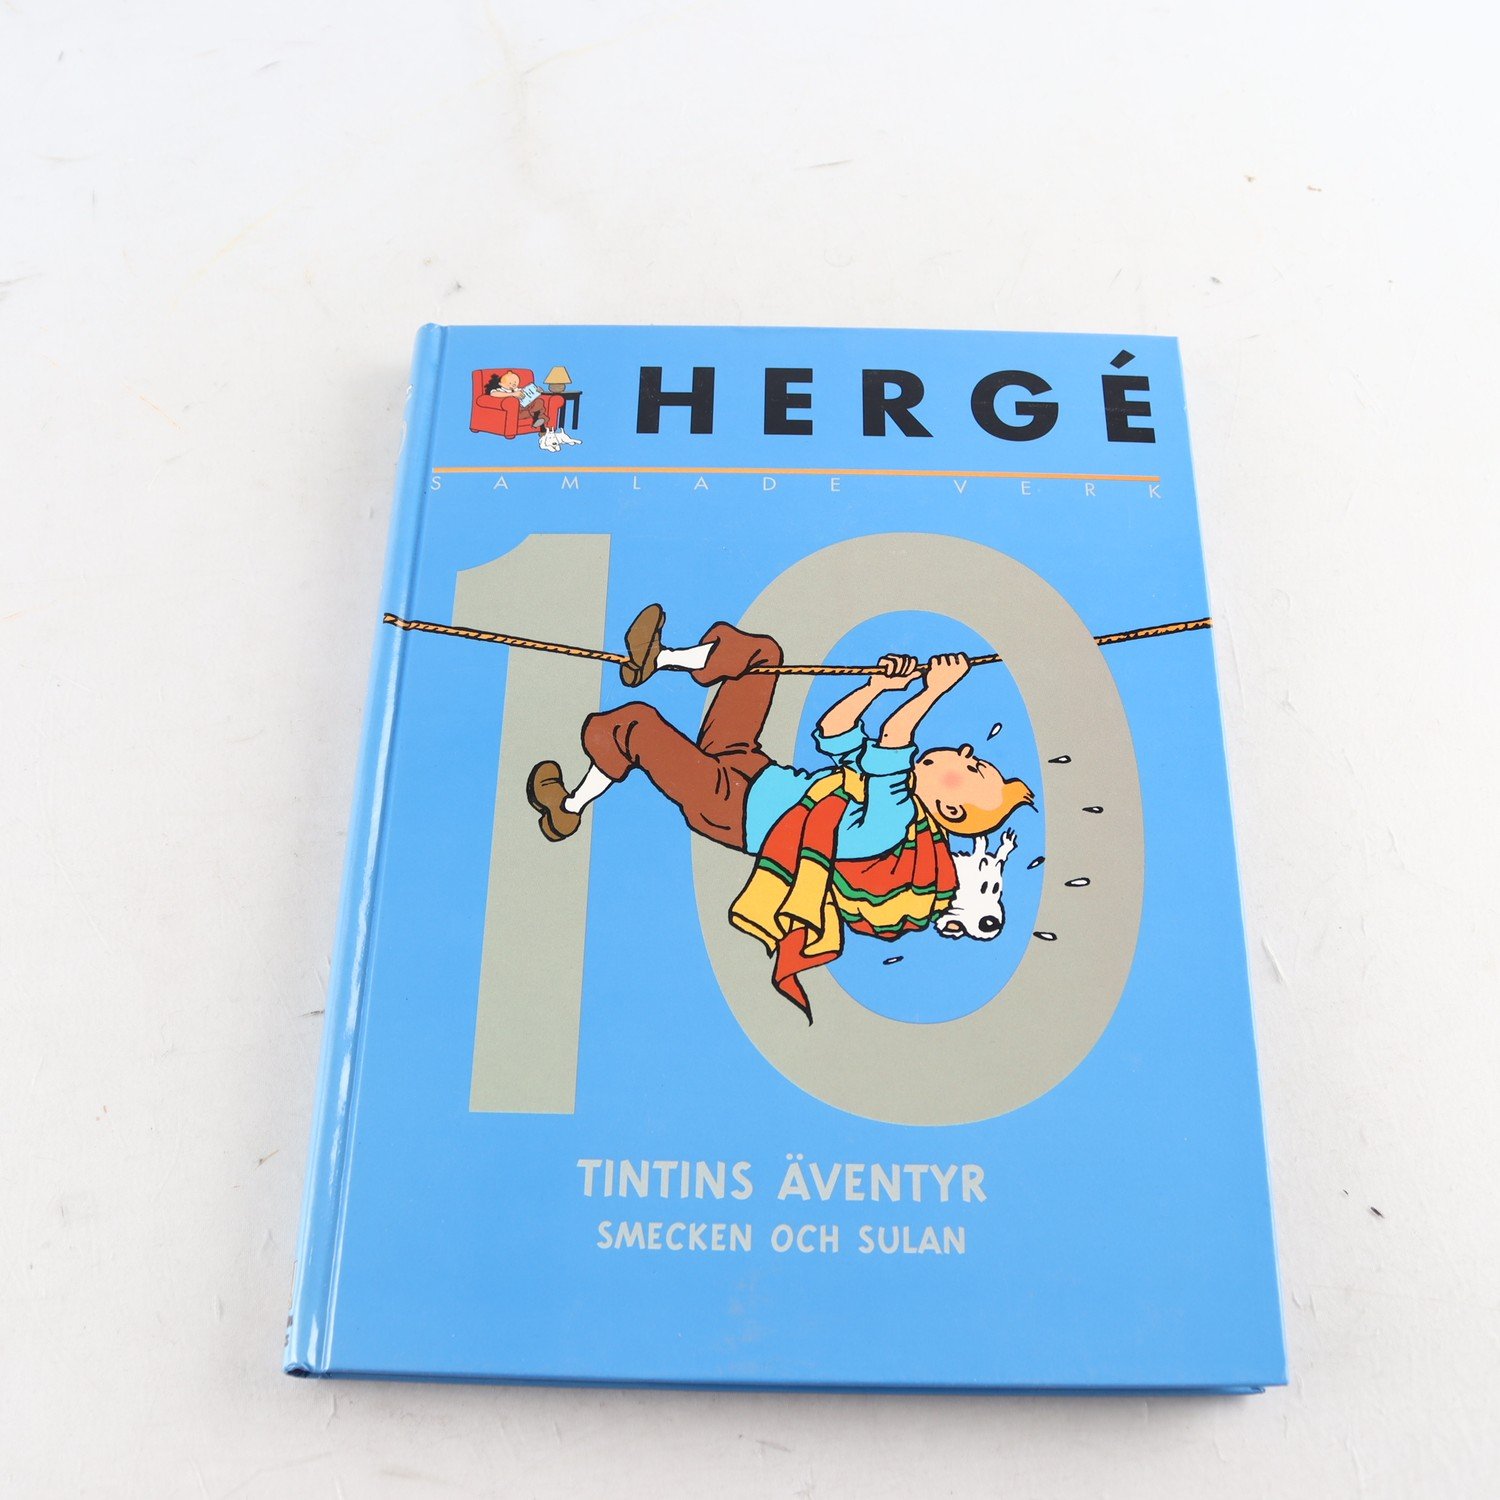 Hergé, Samlade verk, Vol. 10, Tintins äventyr, Smecken och Sulan